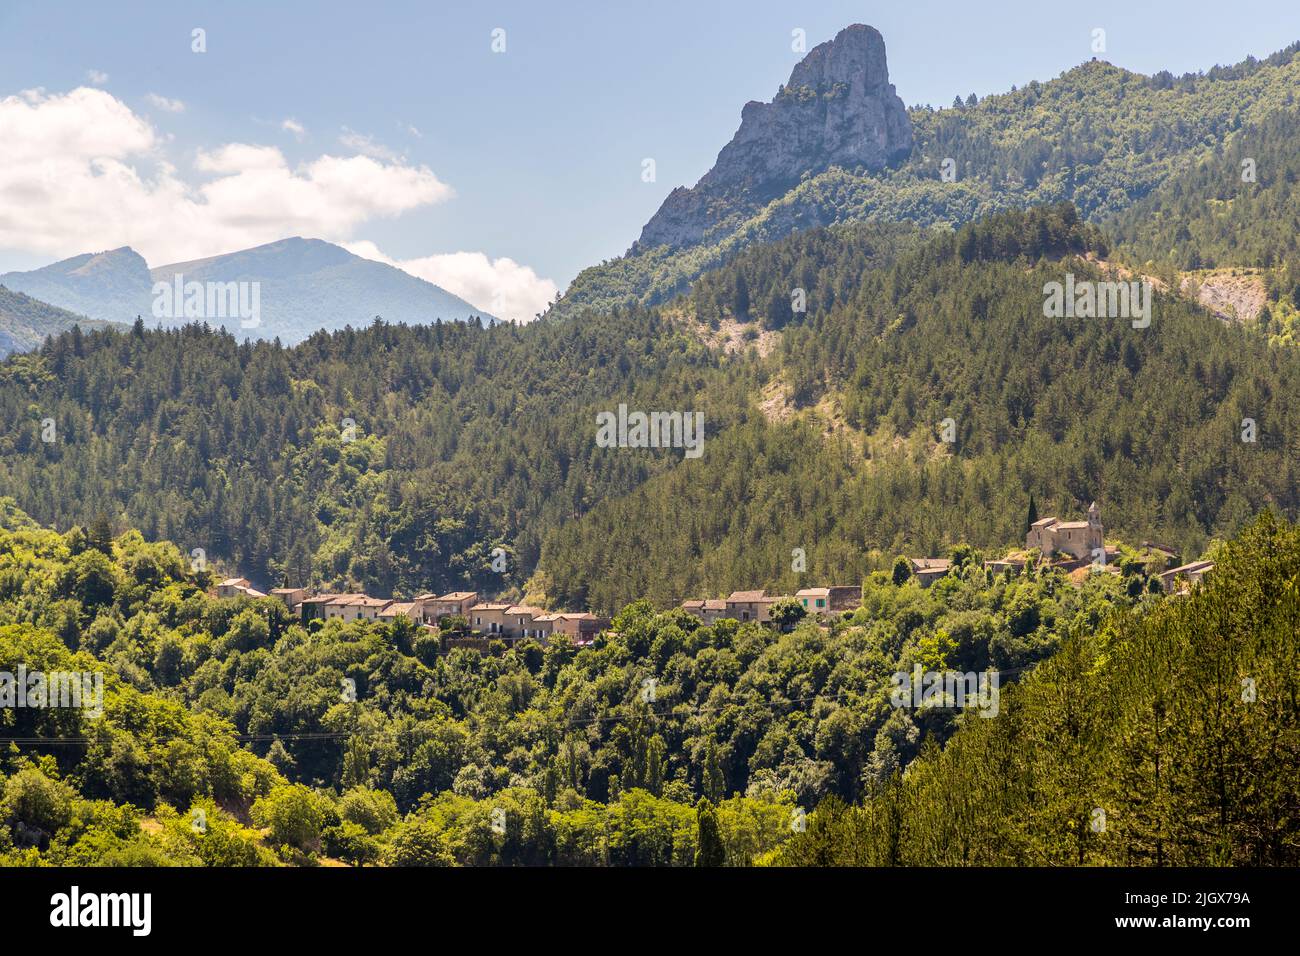 Erbaut auf einem Bergrücken mit Blick auf den Fluss Roanne, dem französischen Dorf Saint-Benoit-en-Diois Stockfoto